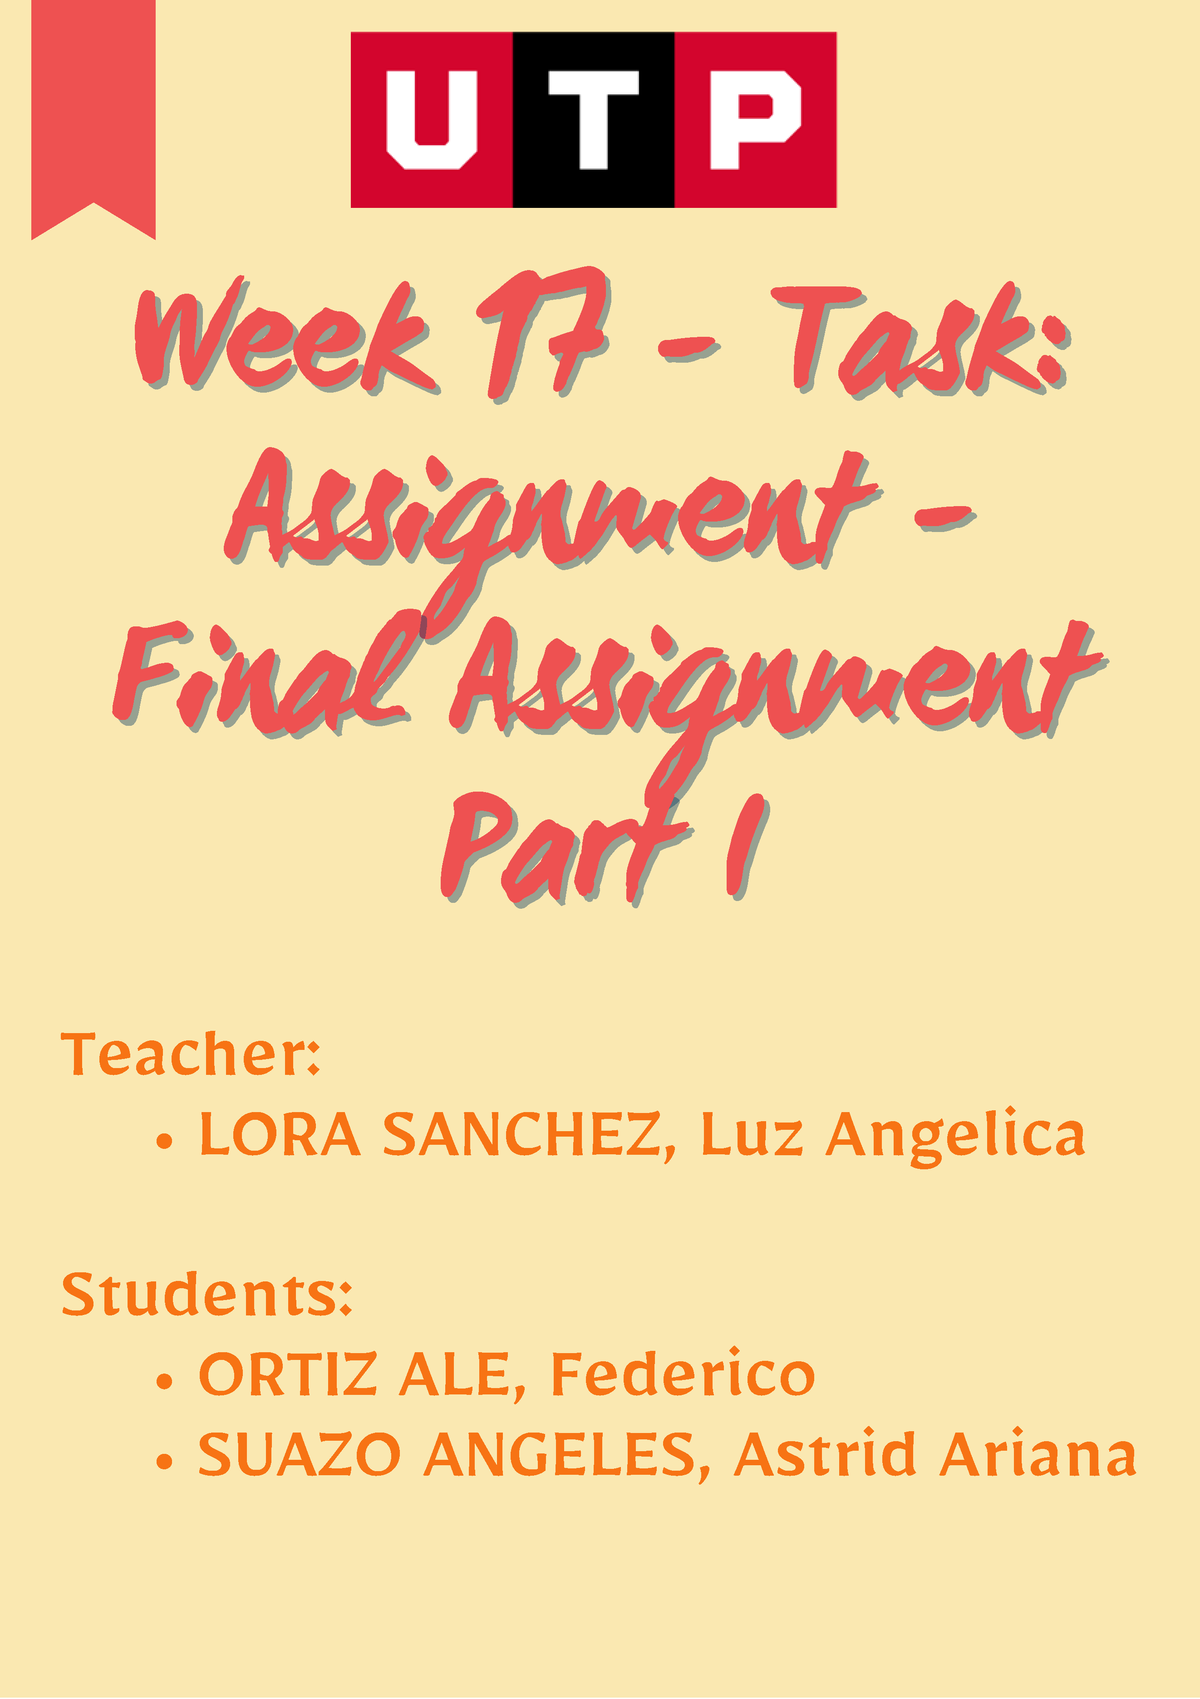 task assignment en español